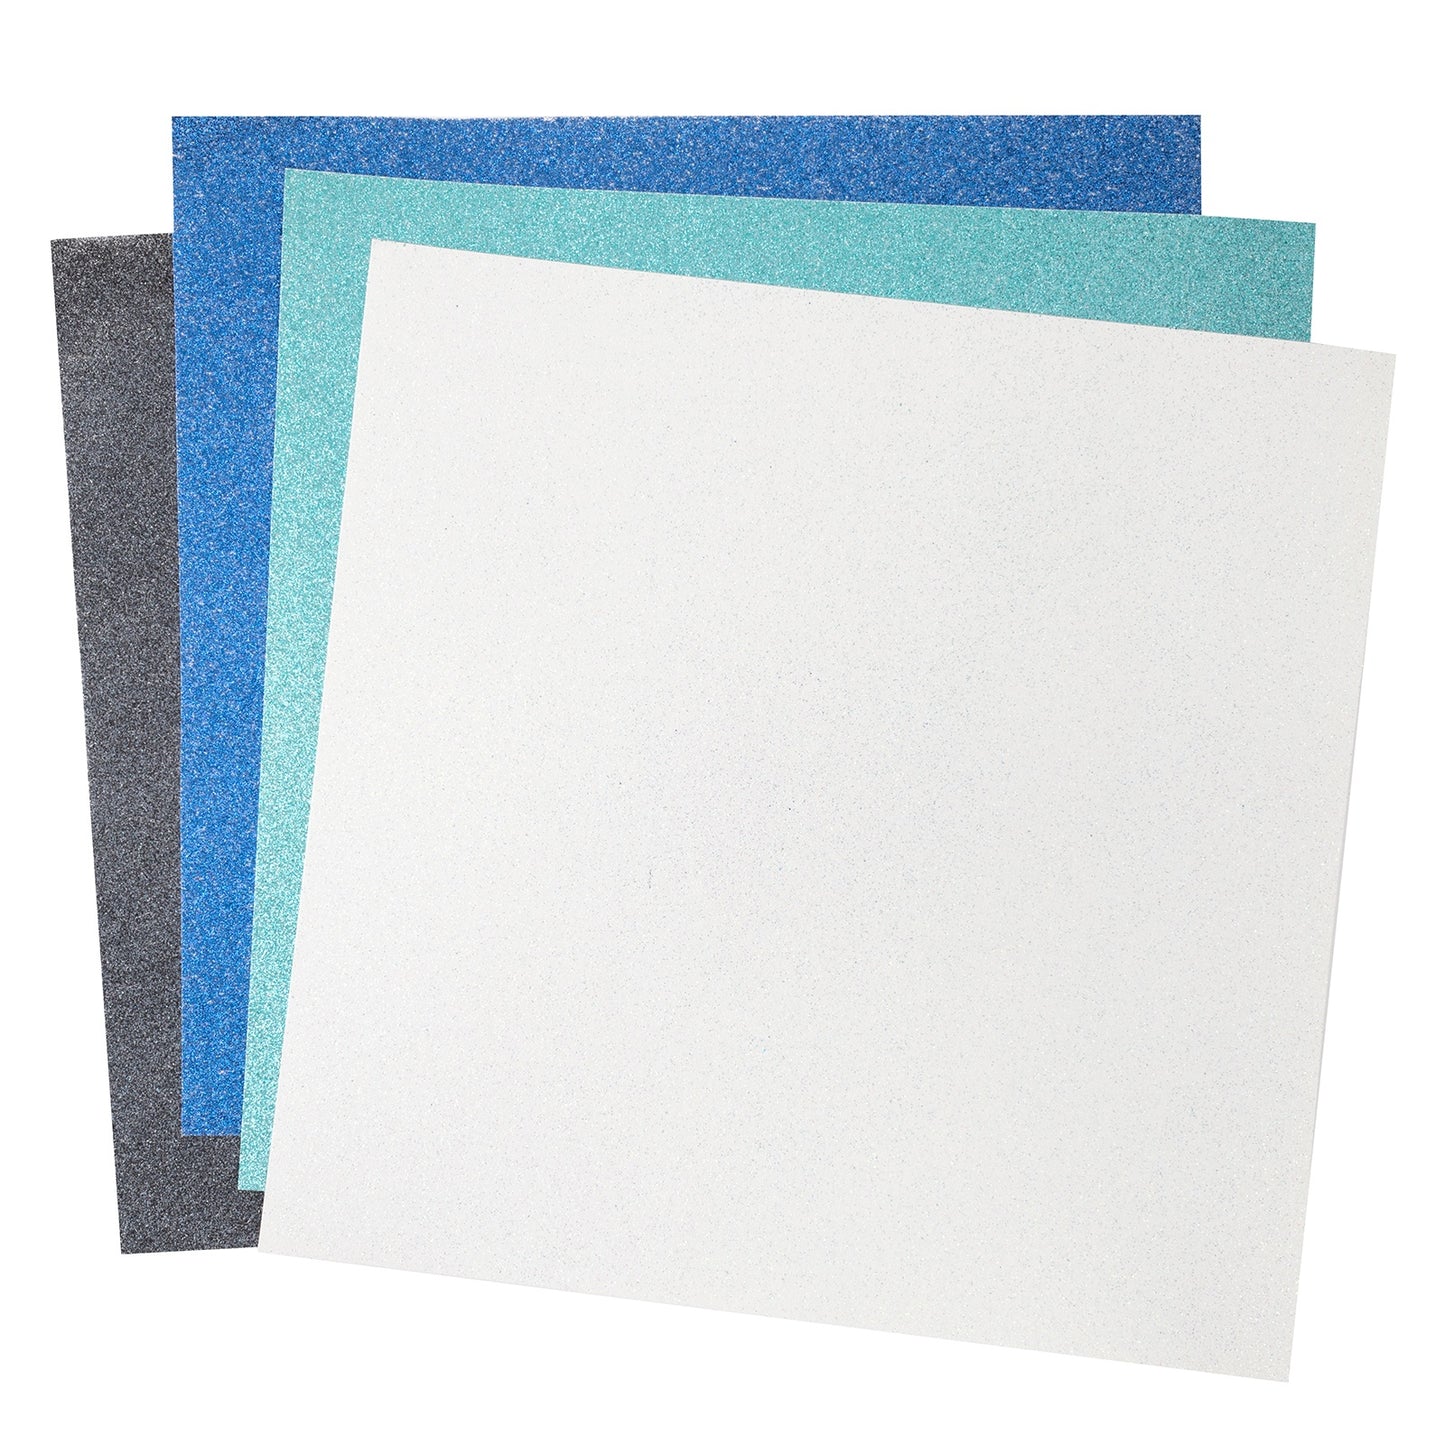 Colorbok Specialty Paper 12"X12" 10/Pkg-Glitter Glacier